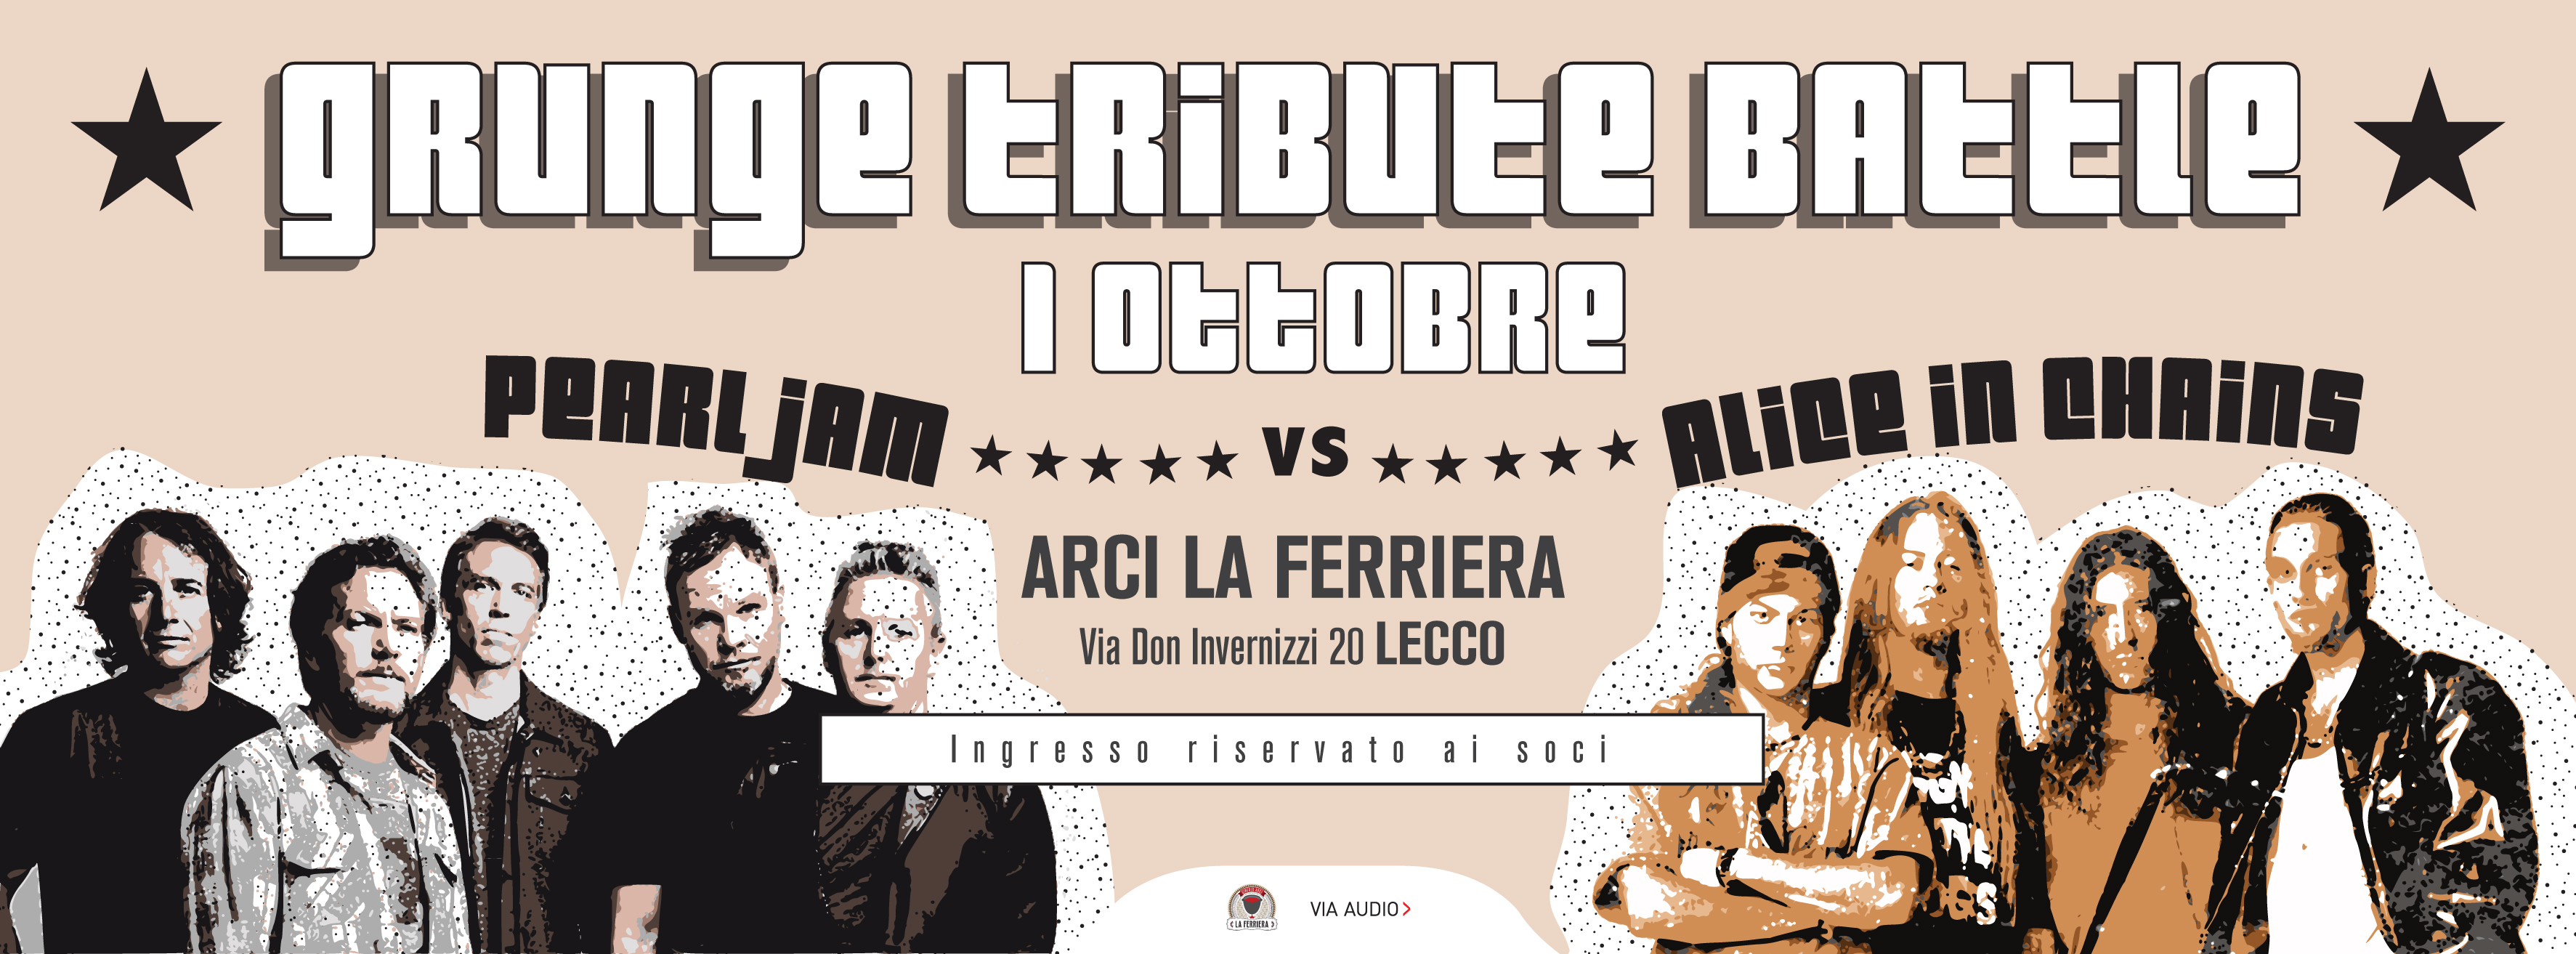 Grunge Tribute Battle | Ferriera